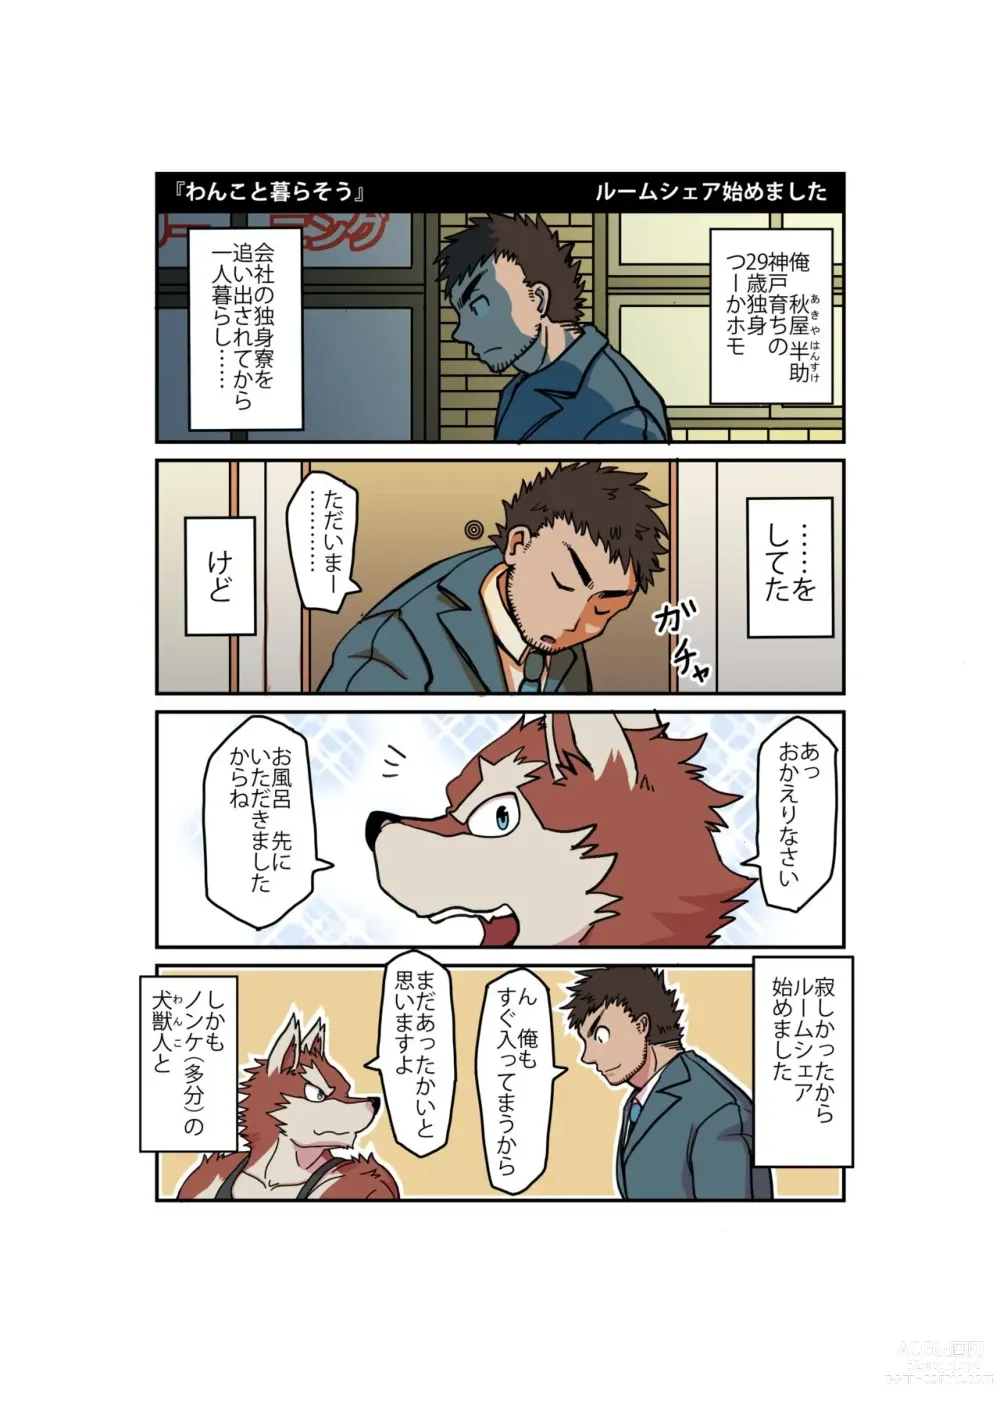 Page 2 of doujinshi Ossu Room Share Monogatari